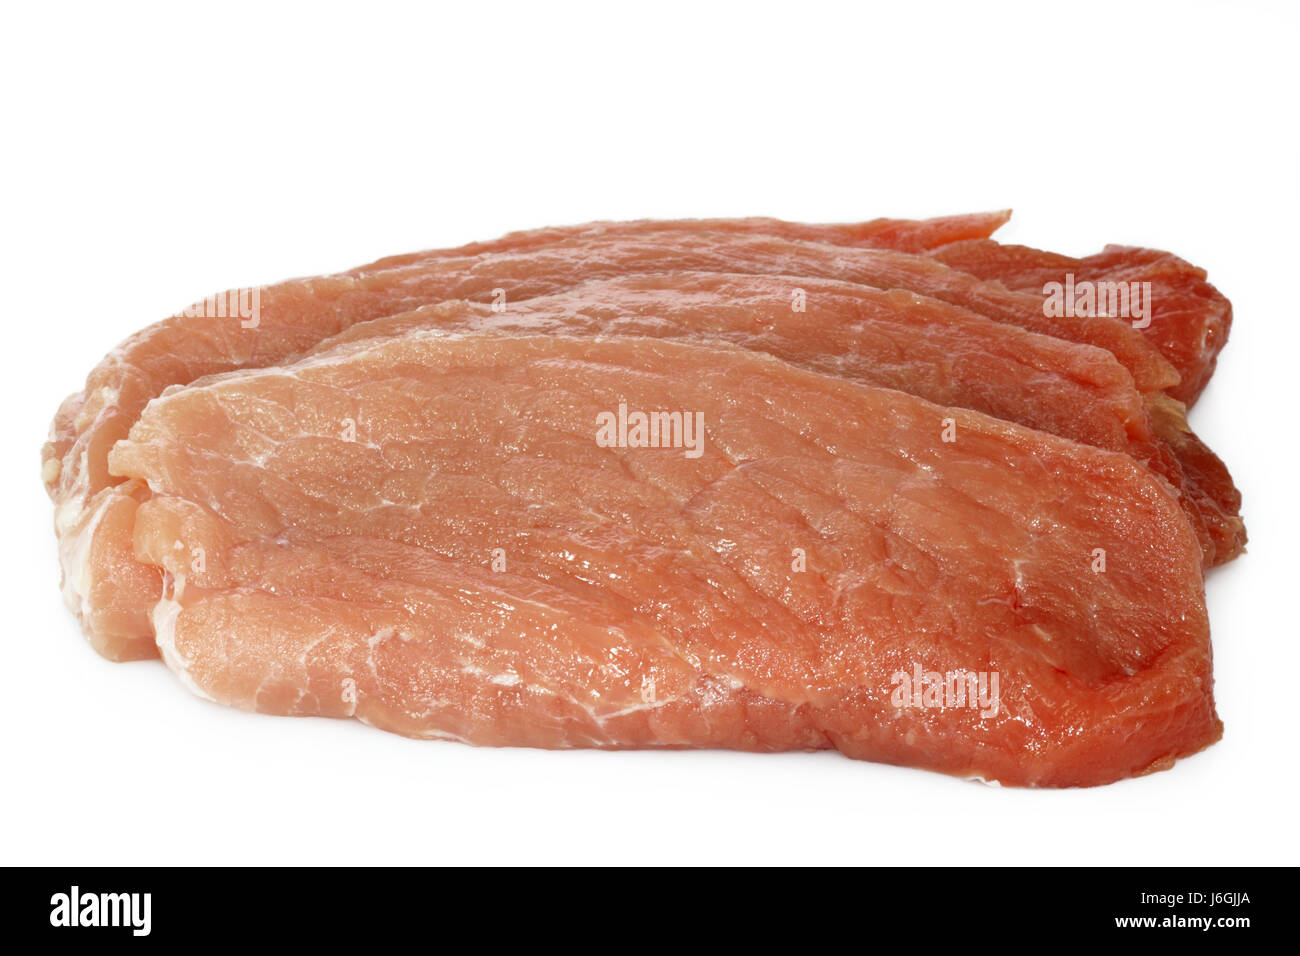 Rohe Schnitzel Schwein Fleisch essen Nahrungsmittel rohe Schnitzel Zutaten  Ernährung Schweinefleisch Stockfotografie - Alamy